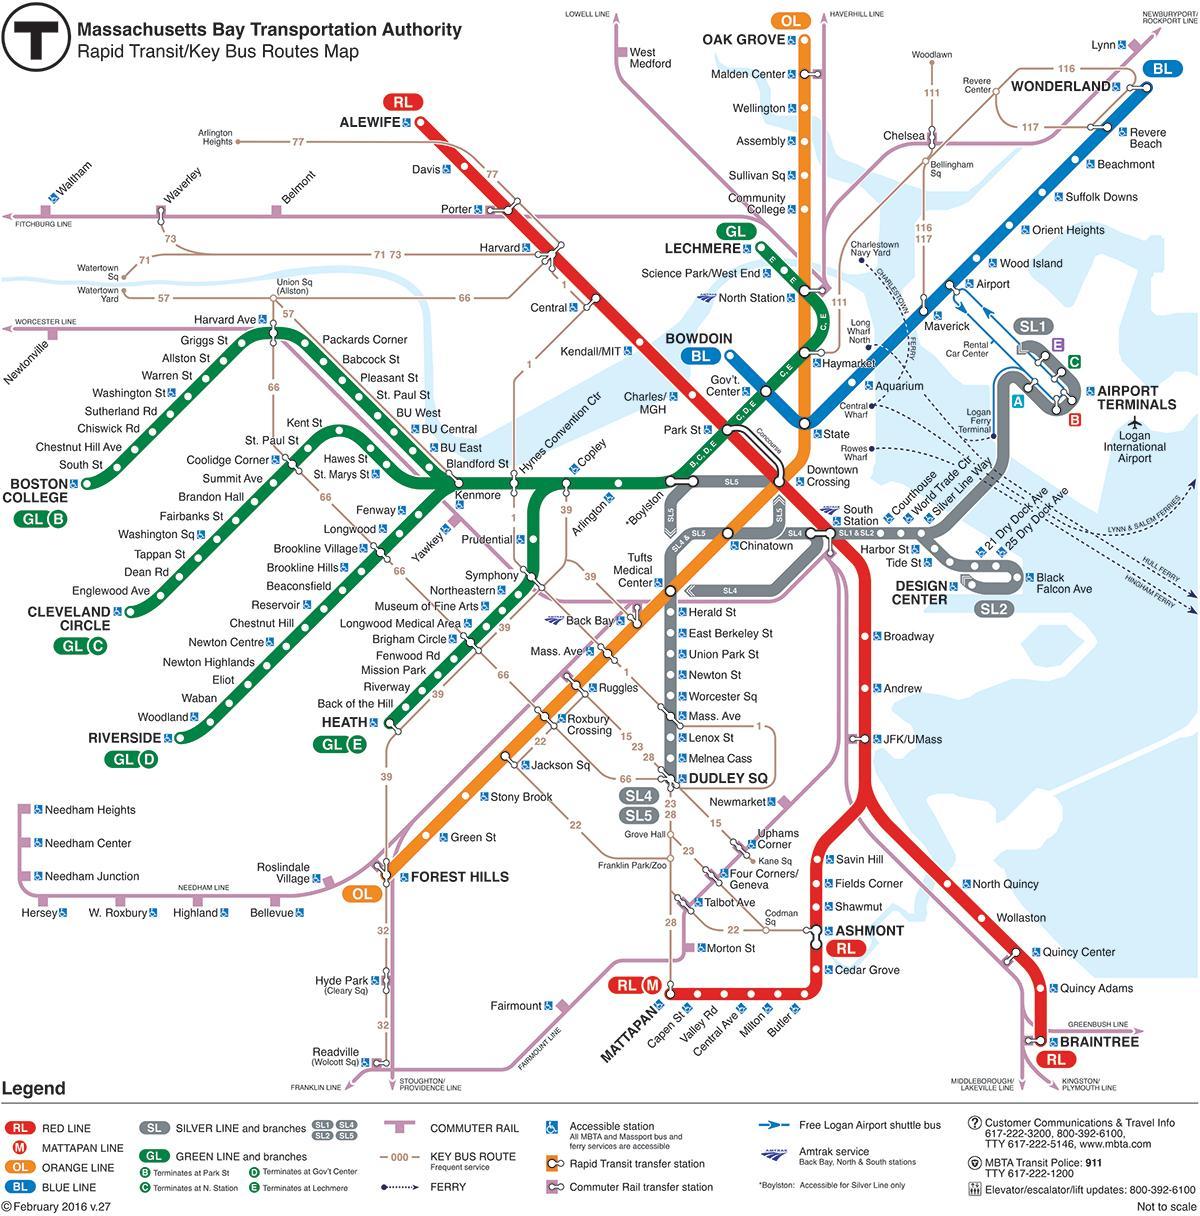 MBTA kartan punainen viiva